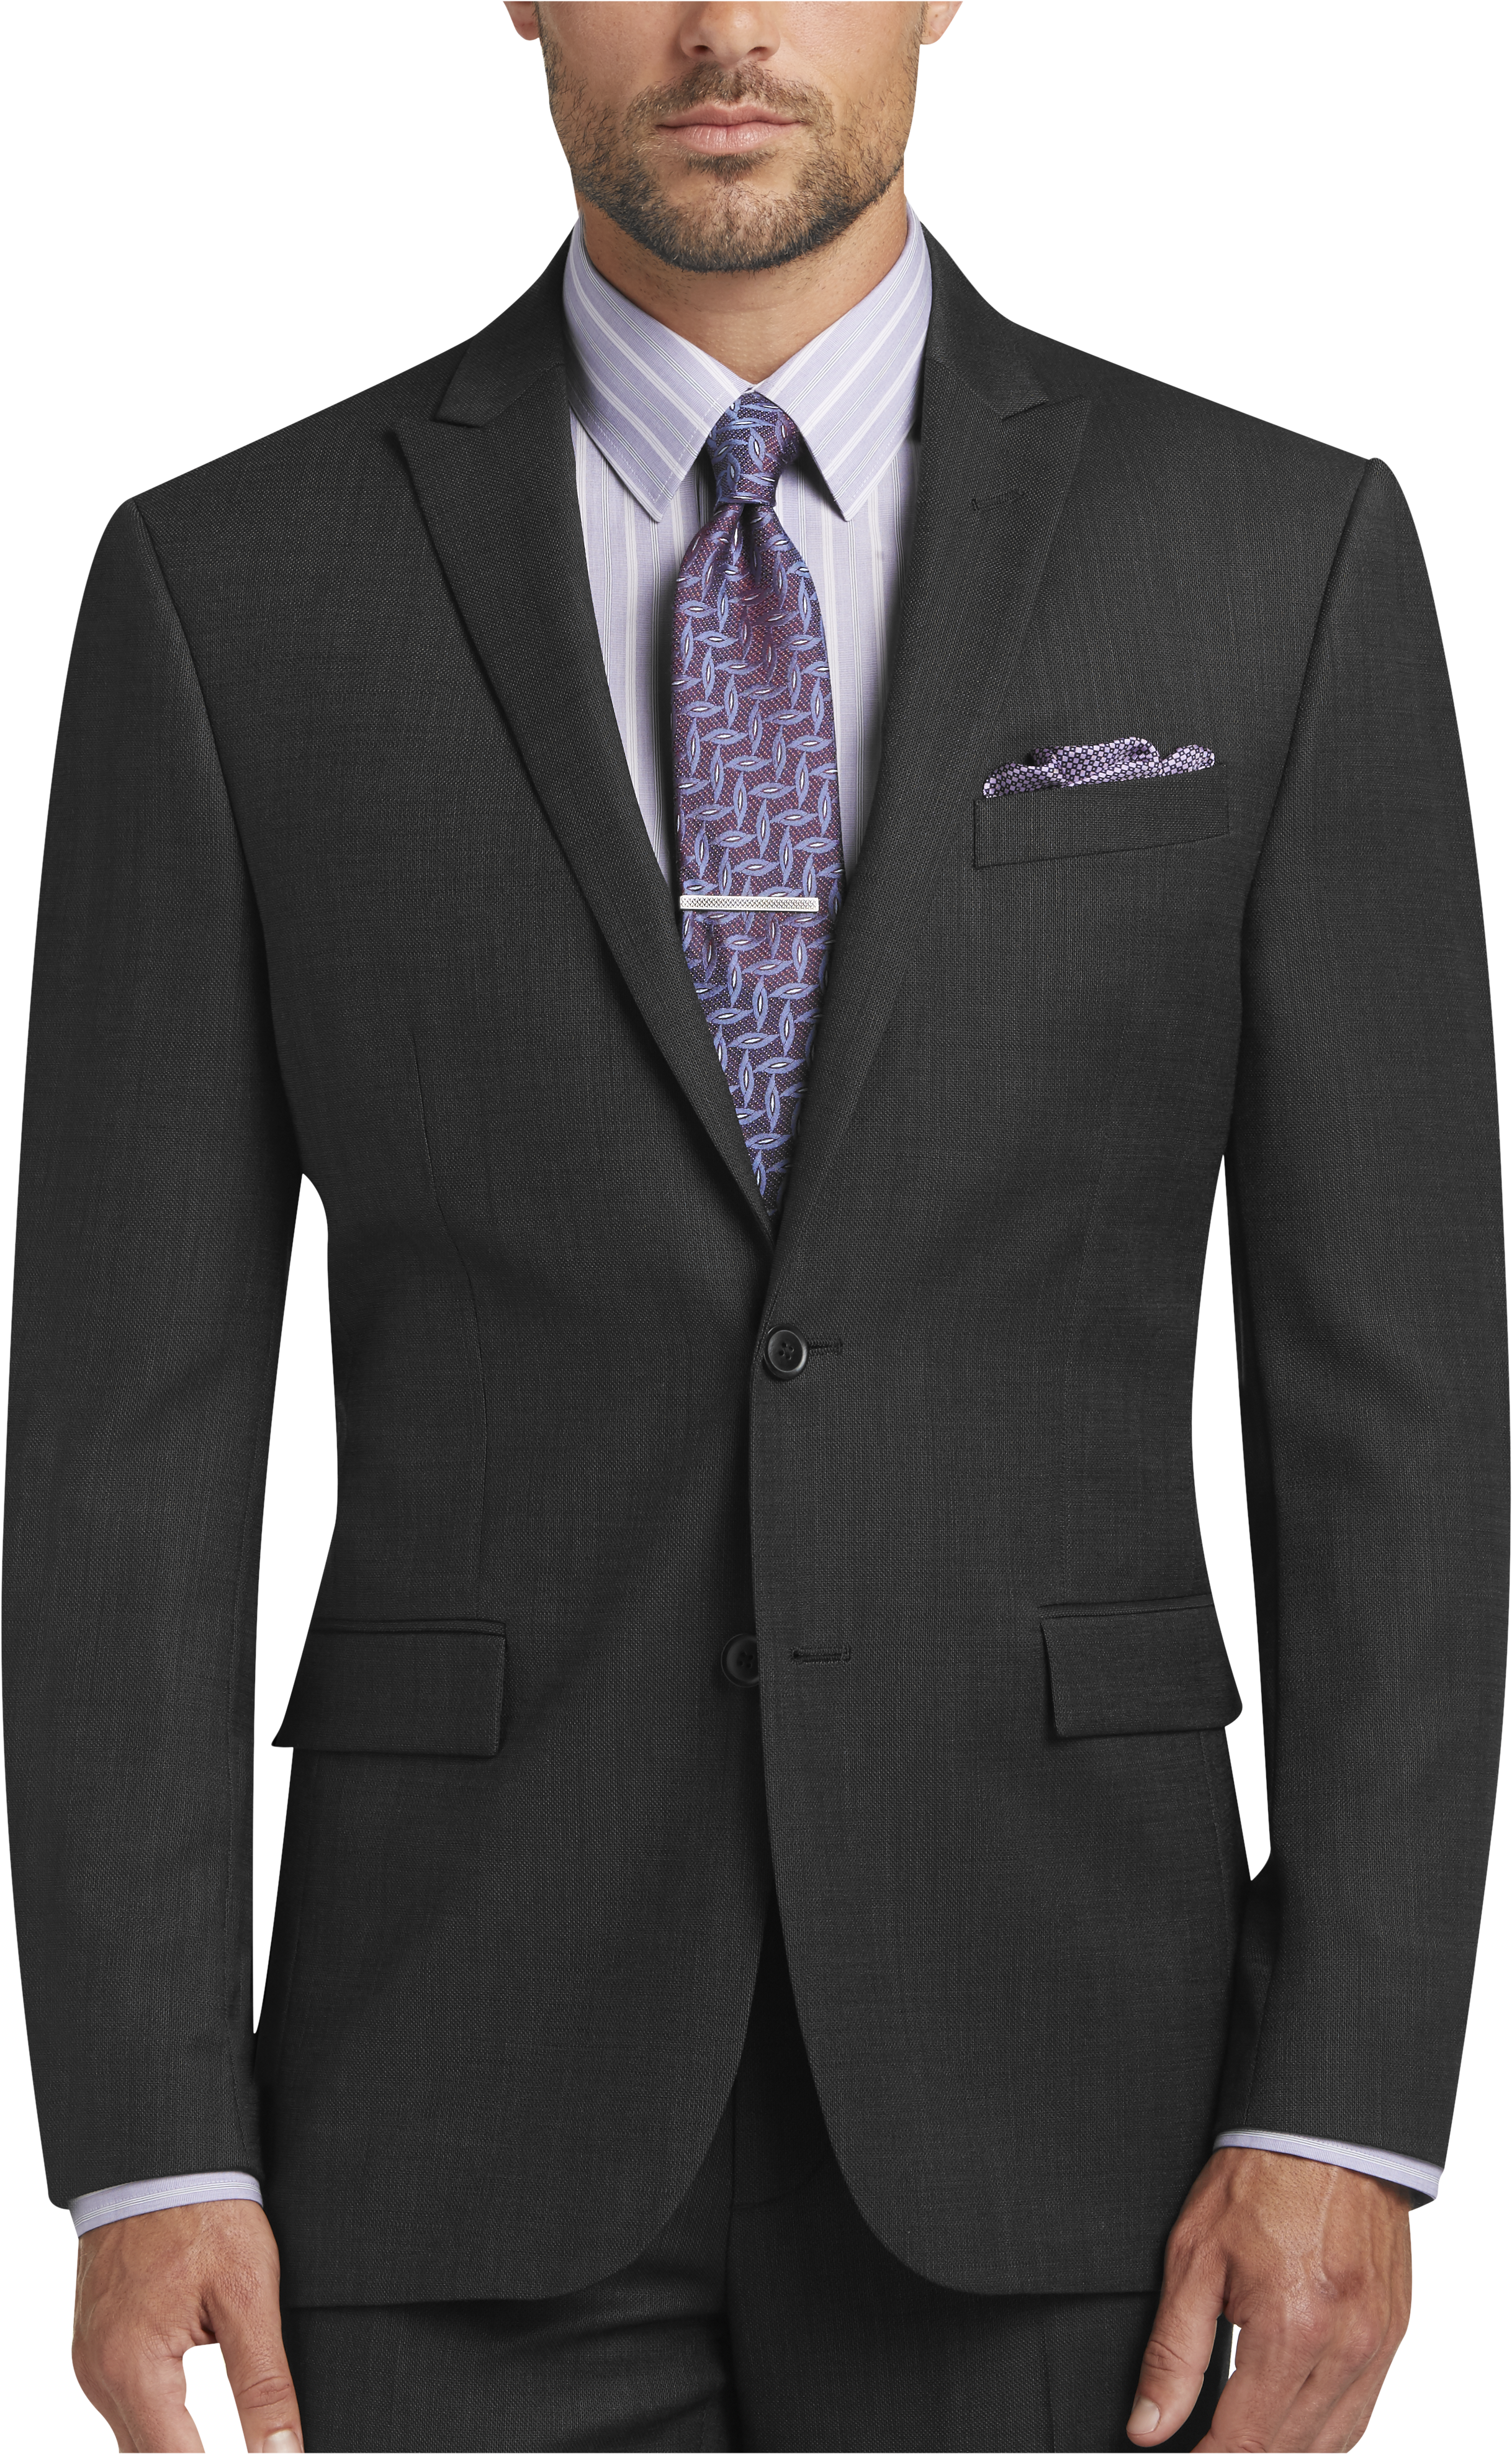 Suit Separates - Men's Suit Separate Combinations | Men's Wearhouse